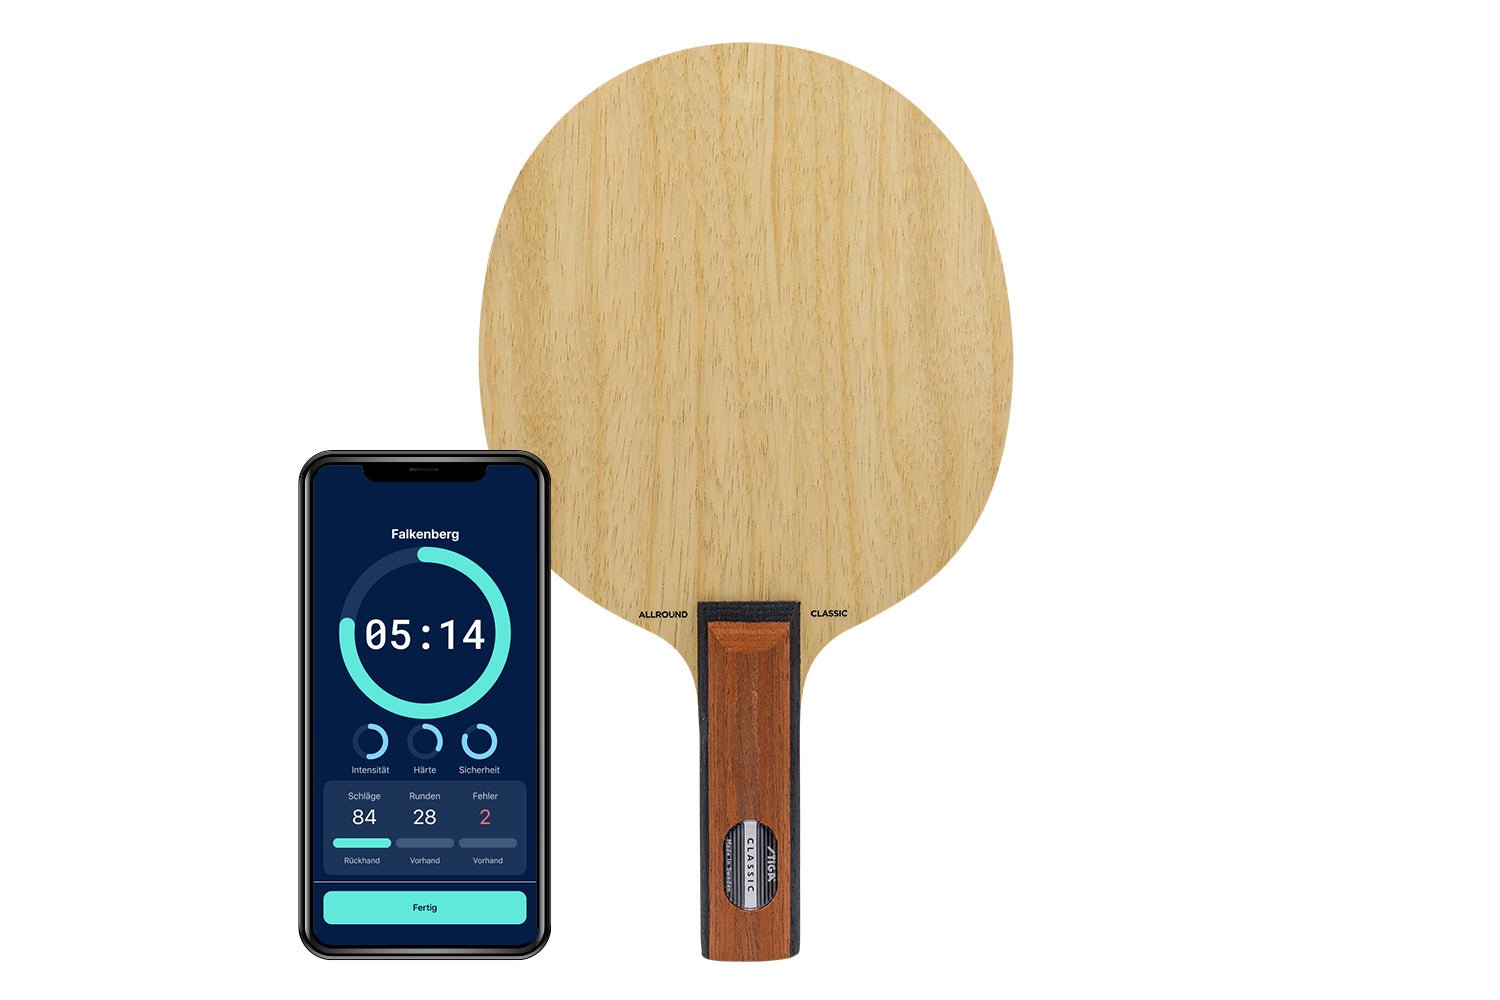 Stiga Allround Classic Tischtennisschläger mit geradem Griff und Smartphone zeigt Daten des Schlägers vor weißem Hintergrund